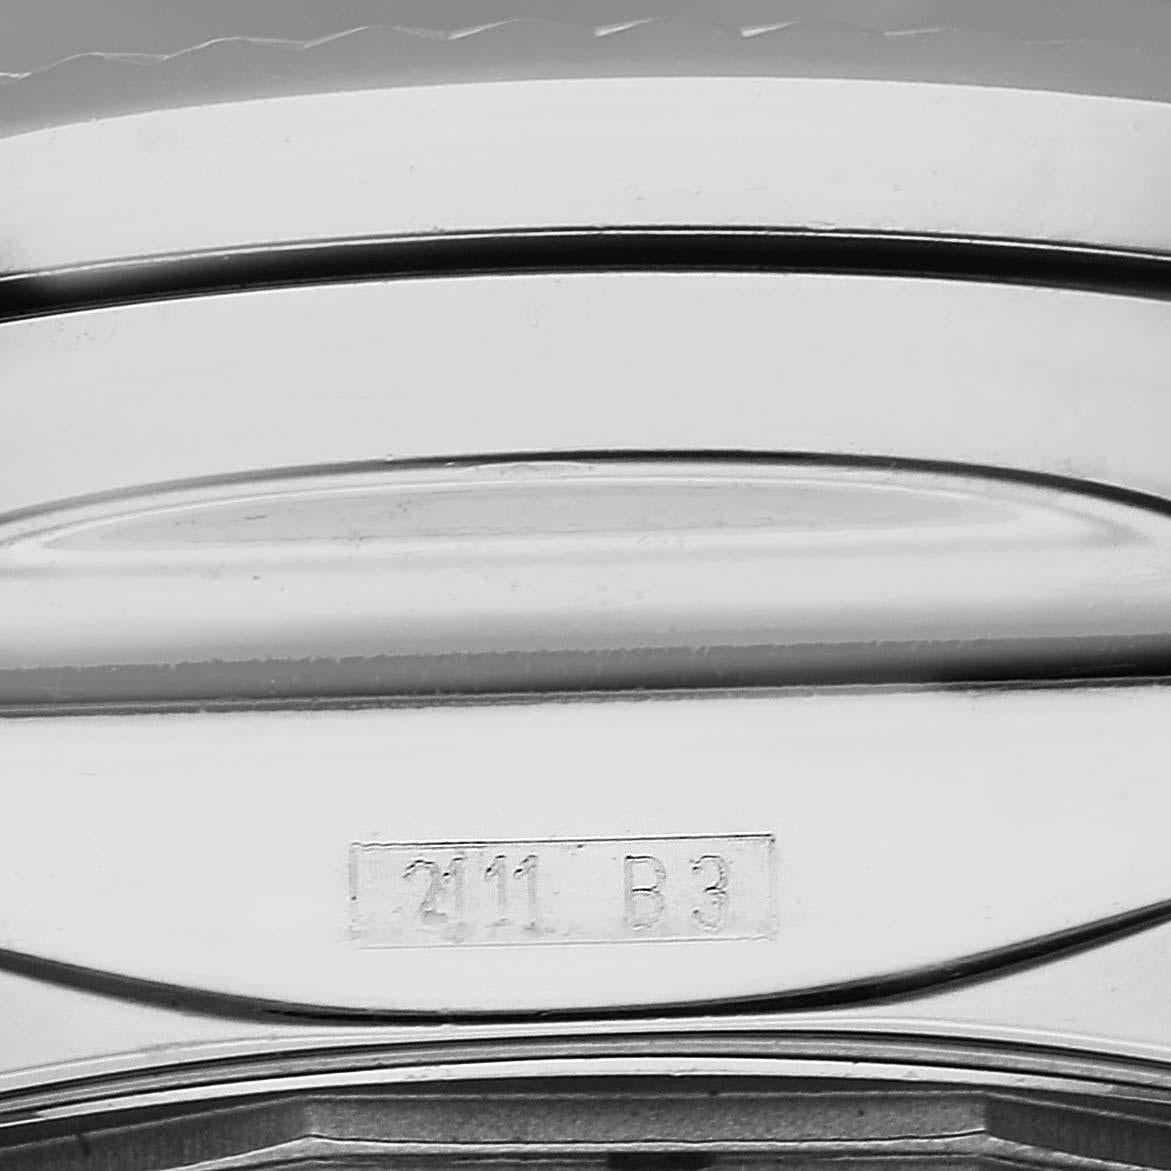 Montre Hommes Breitling Bentley Barnato 49mm Steel A25368. Mouvement automatique à remontage automatique, officiellement certifié chronomètre. Fonction chronographe. Boîtier en acier inoxydable de 49.0 mm de diamètre. Poussoirs et couronne vissée en